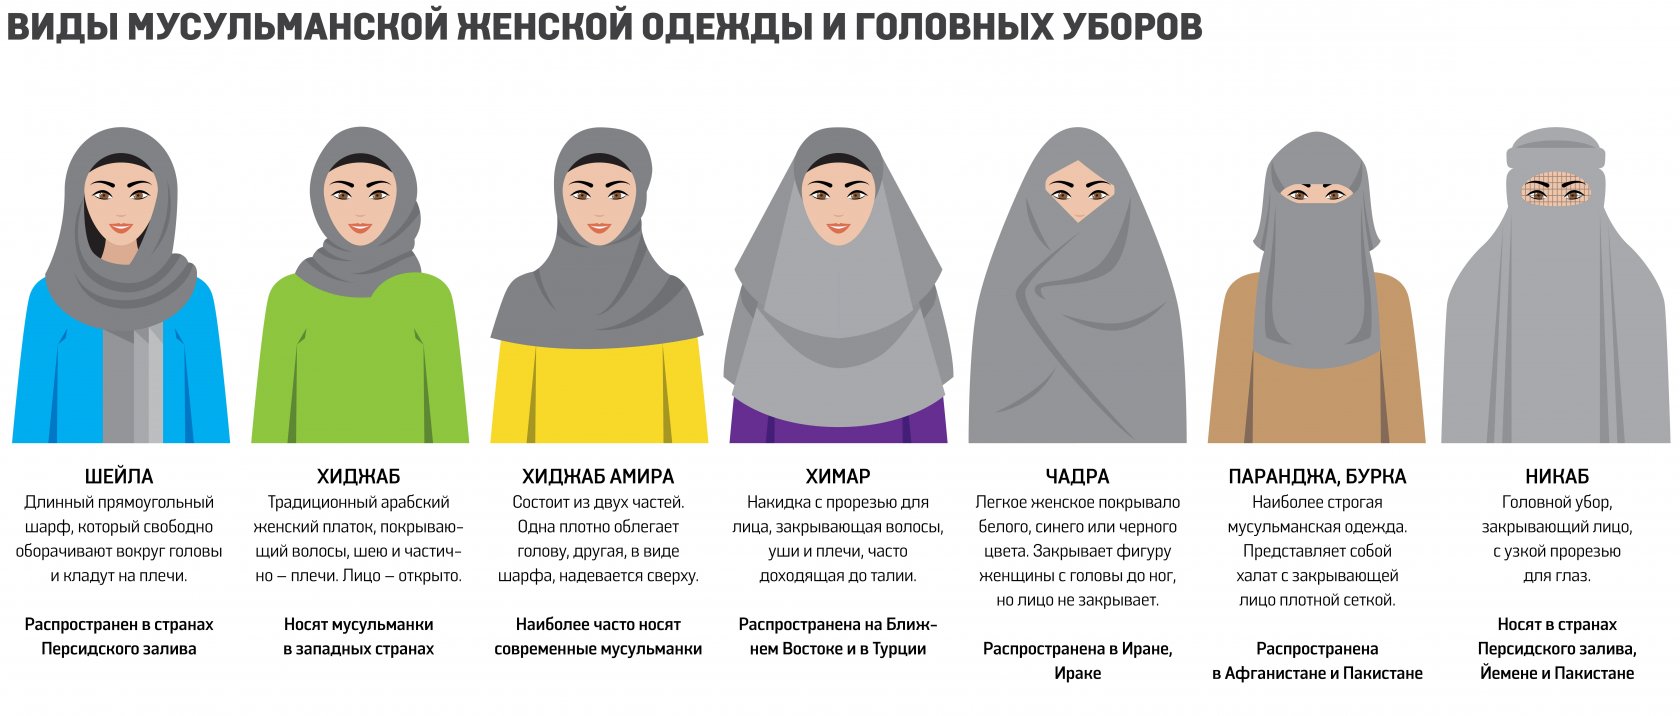 Хиджаб паранджа чадра никаб отличия